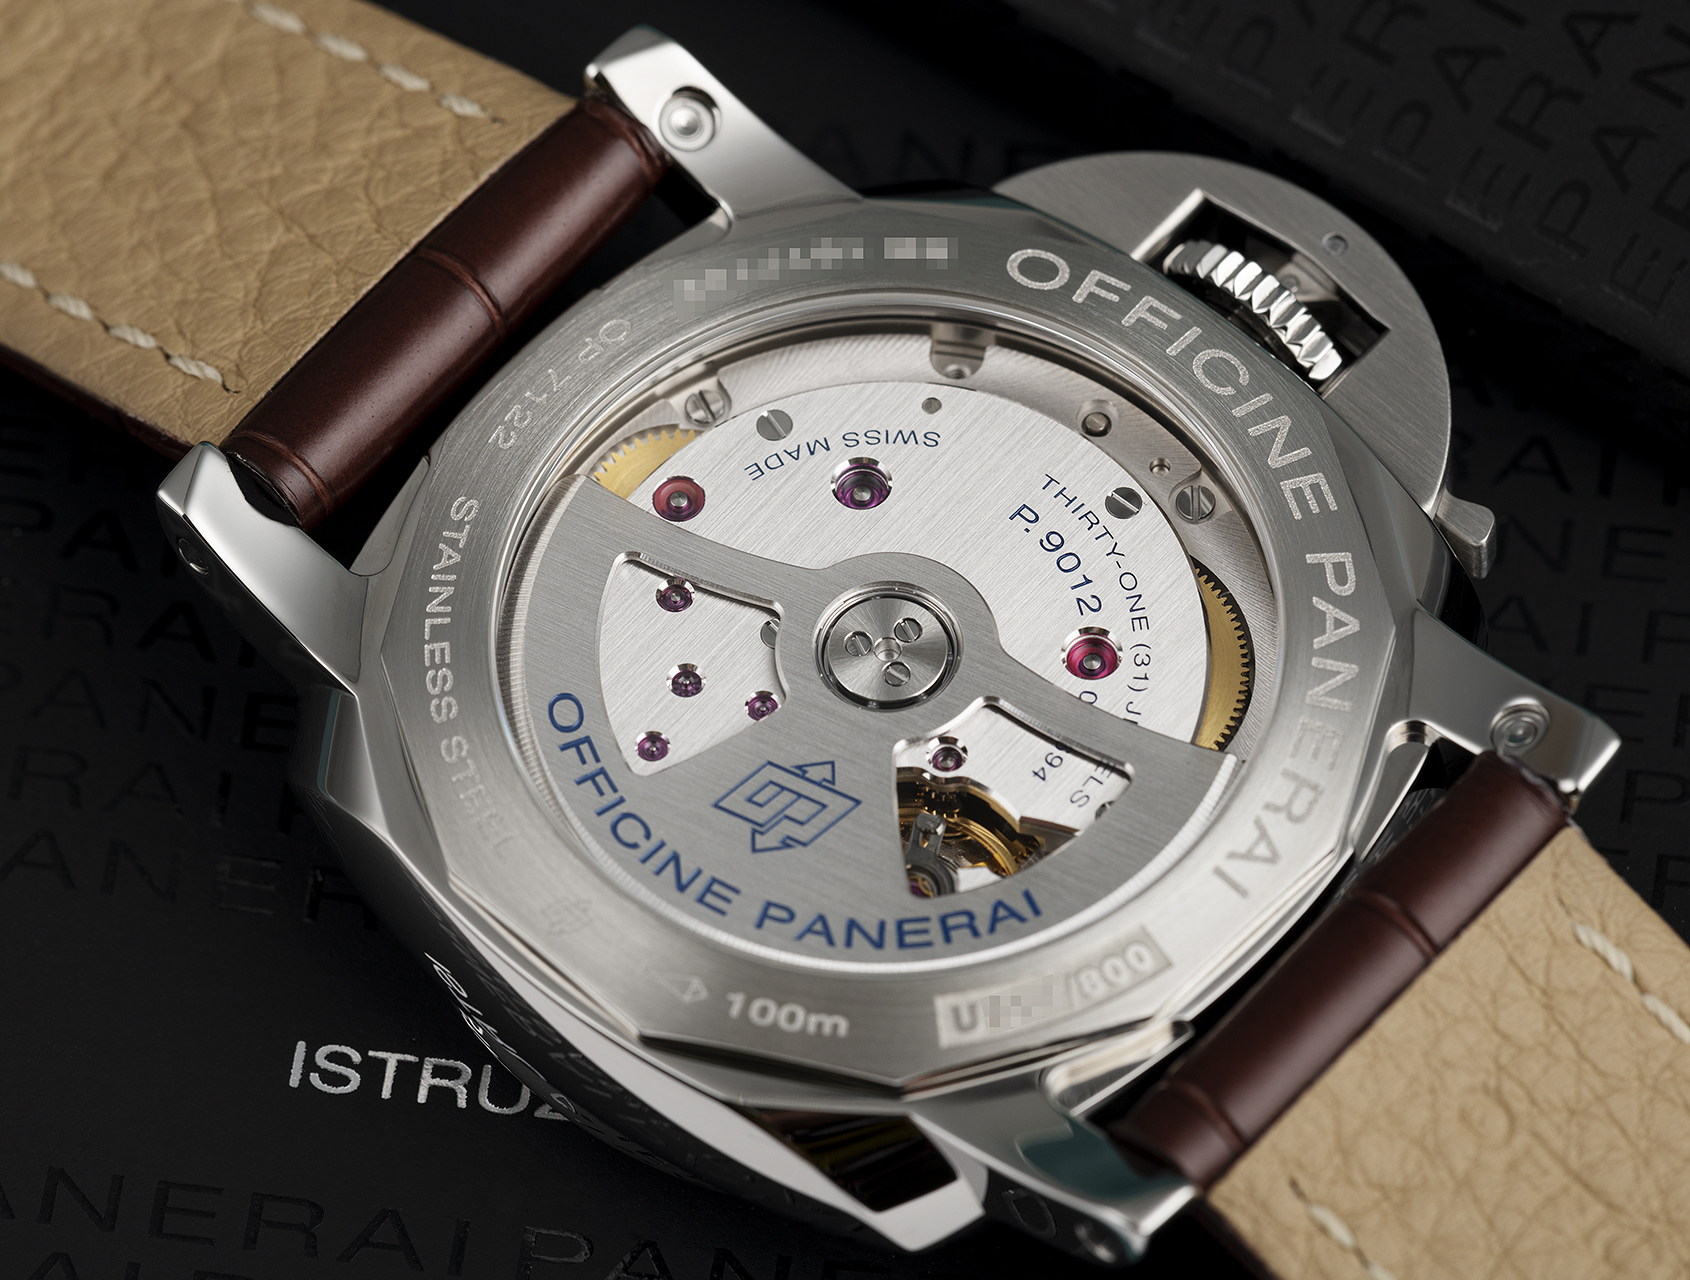 Panerai Luminor 1950 3-Day GMT Watches | ref PAM01537 | PAM 01537 - Box ...